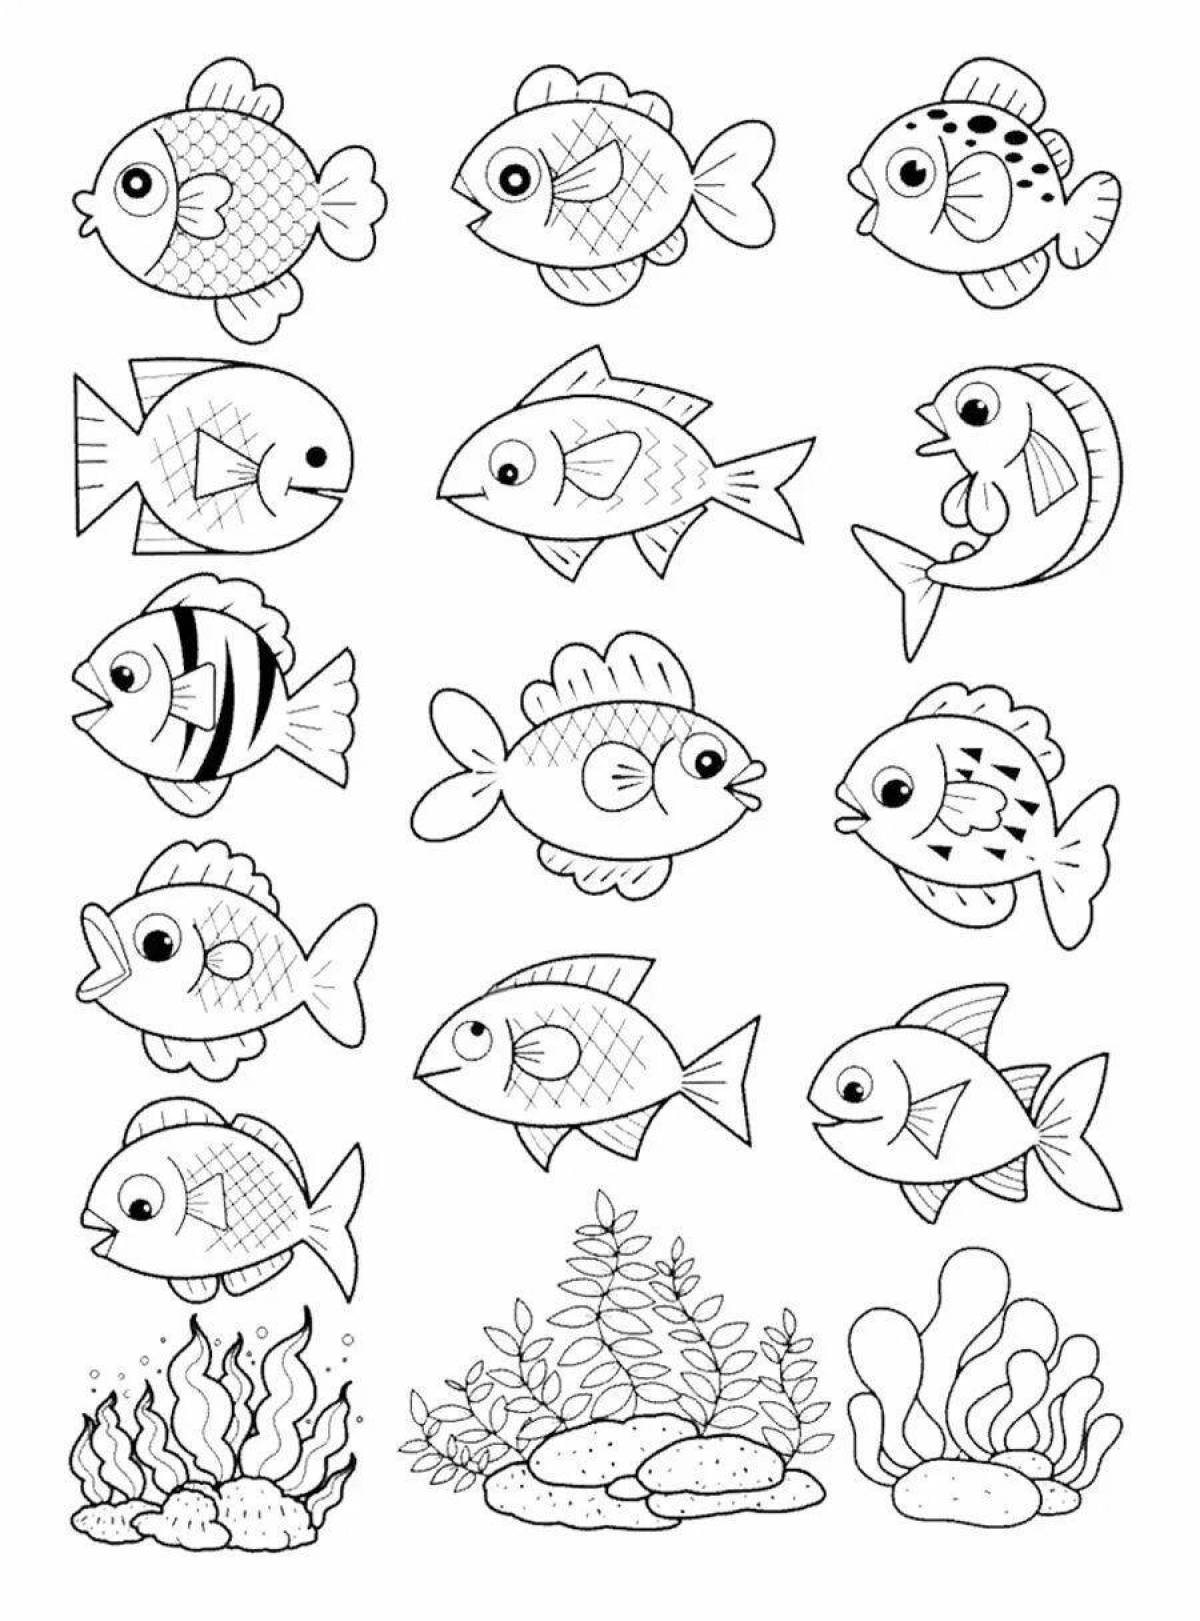 Joyful aquarium fish coloring book for kids